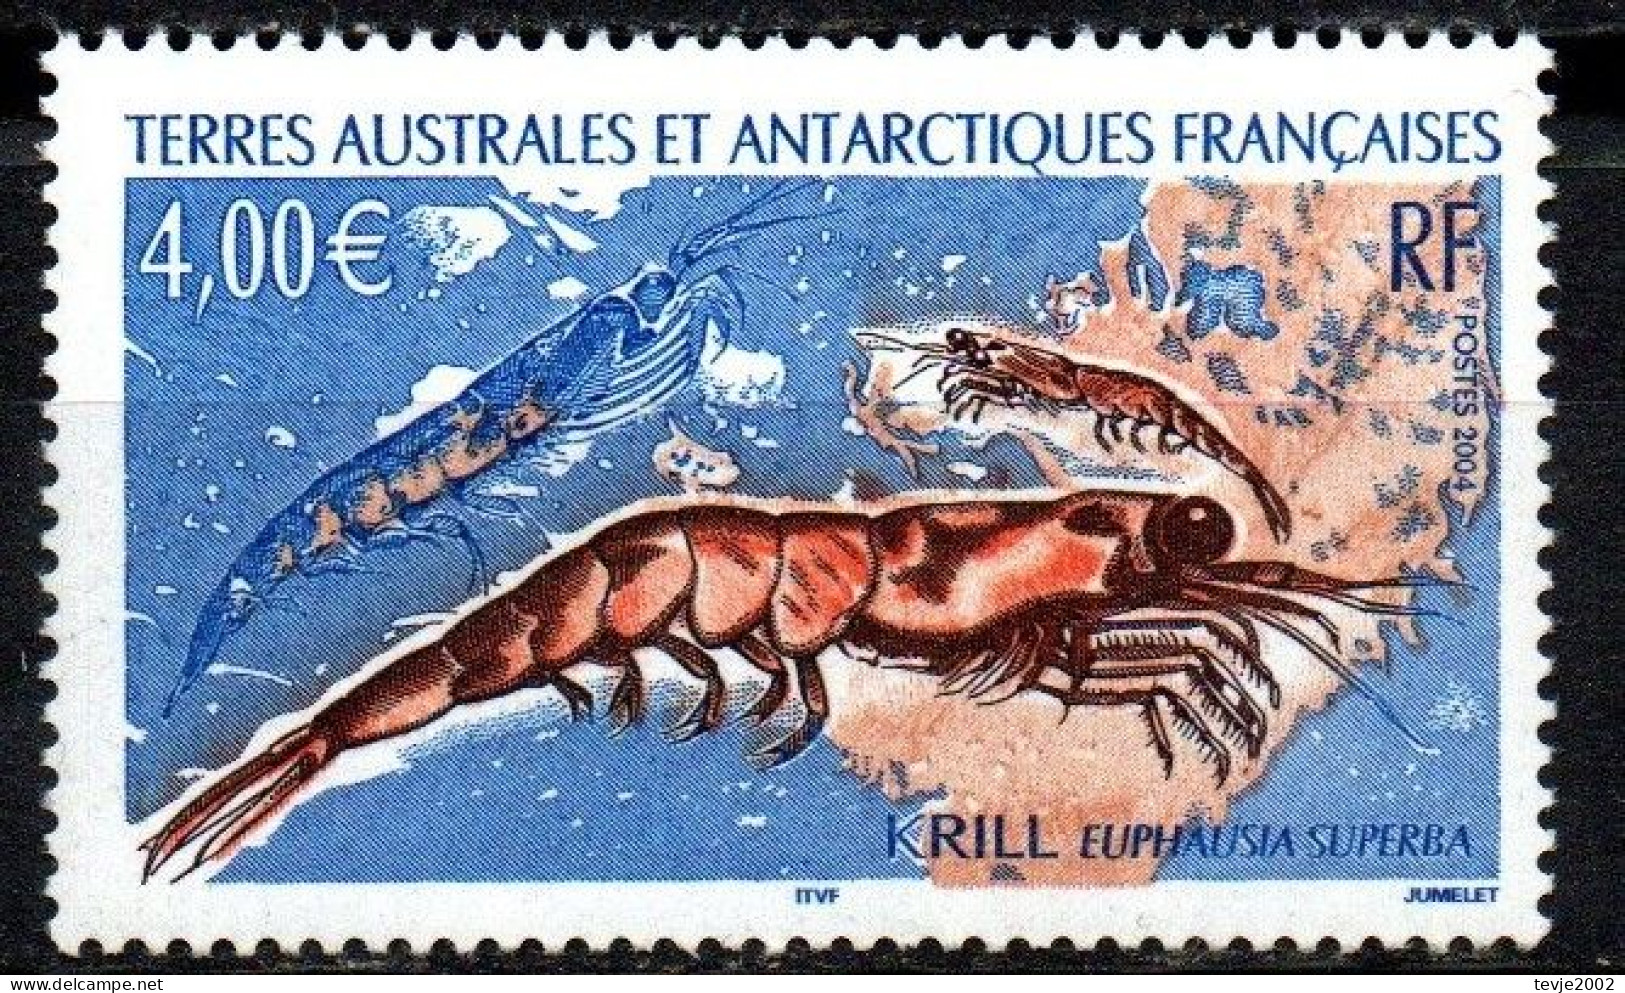 Franz. Gebiet Antarktis TAAF 2004 - Mi.Nr. 552 - Postfrisch MNH - Tiere Animals Krill - Maritiem Leven